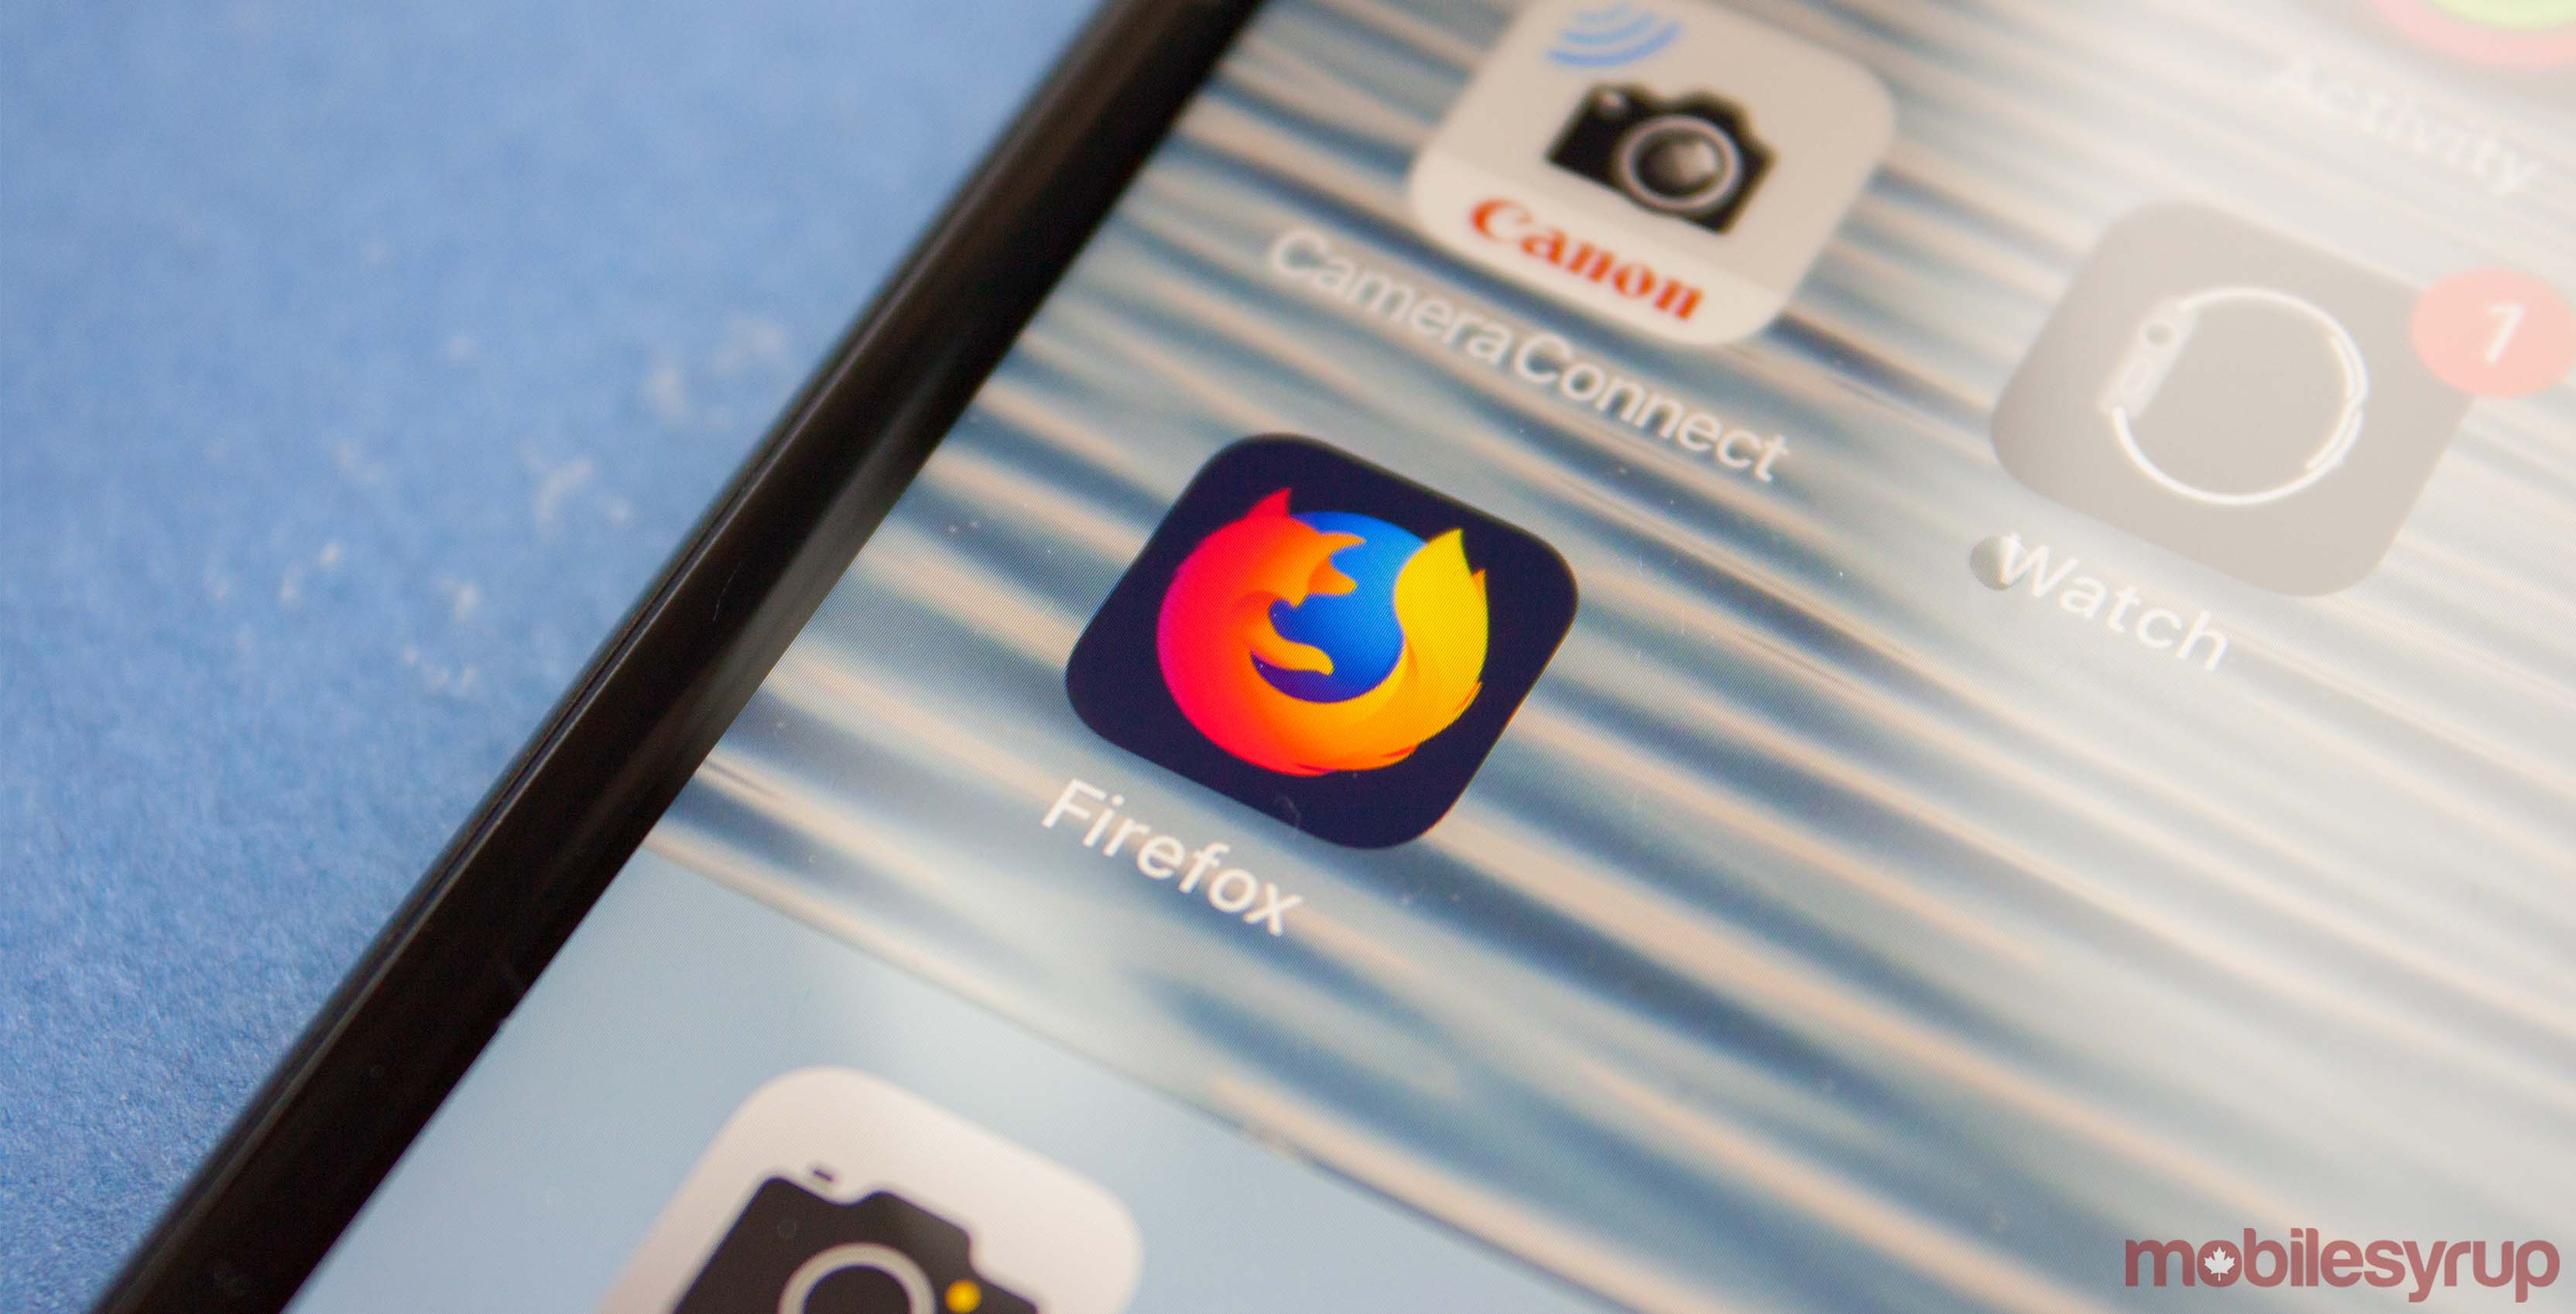 Firefox app icon on iOS